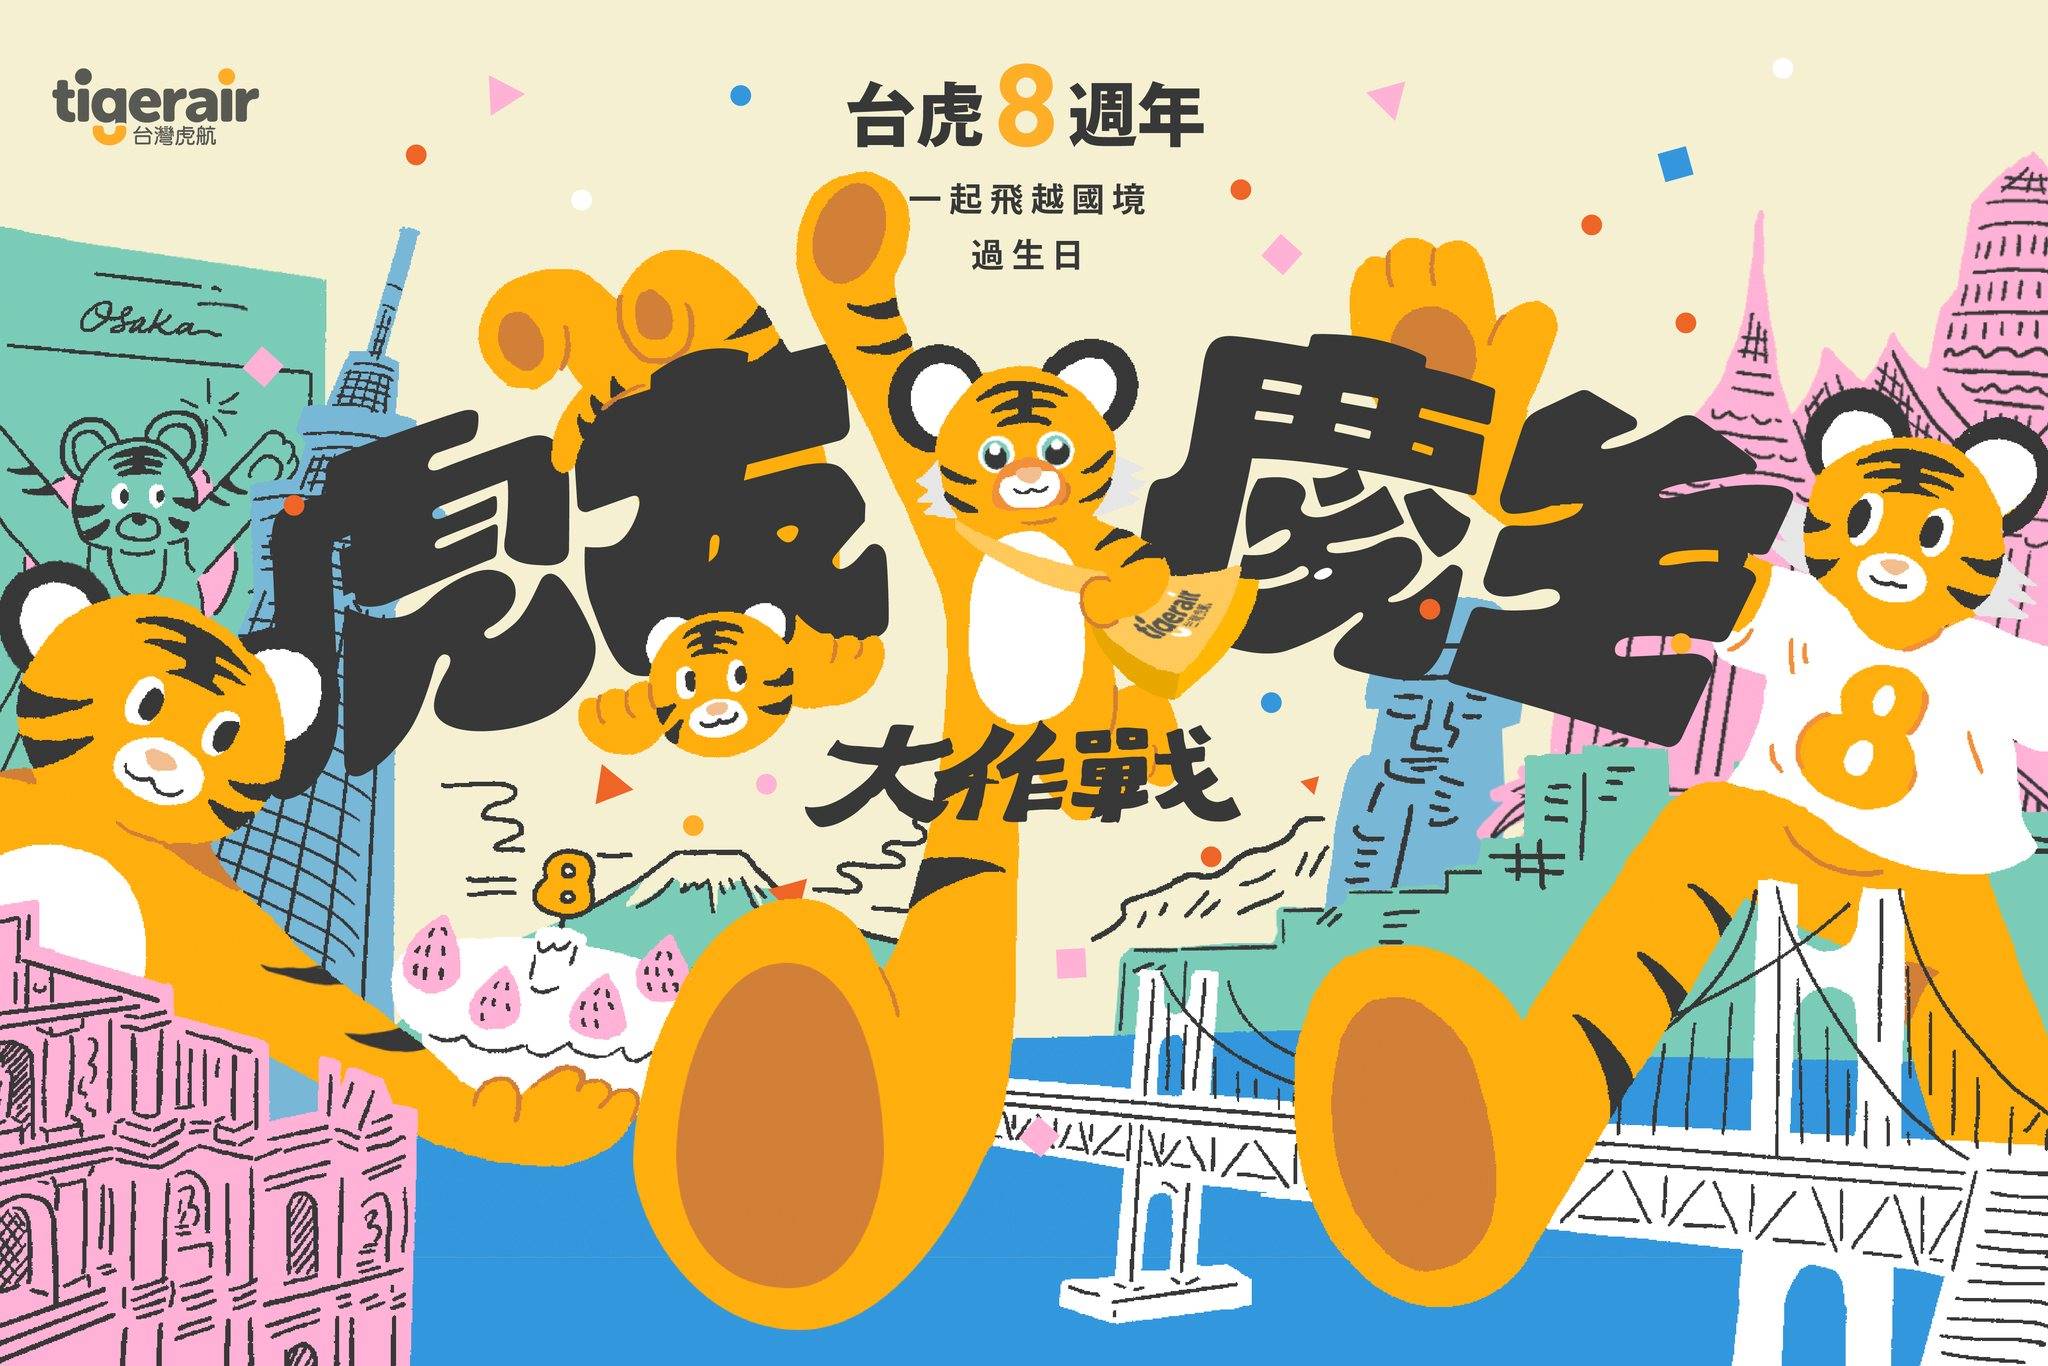 台灣虎航tigerair祭出8週年機票優惠